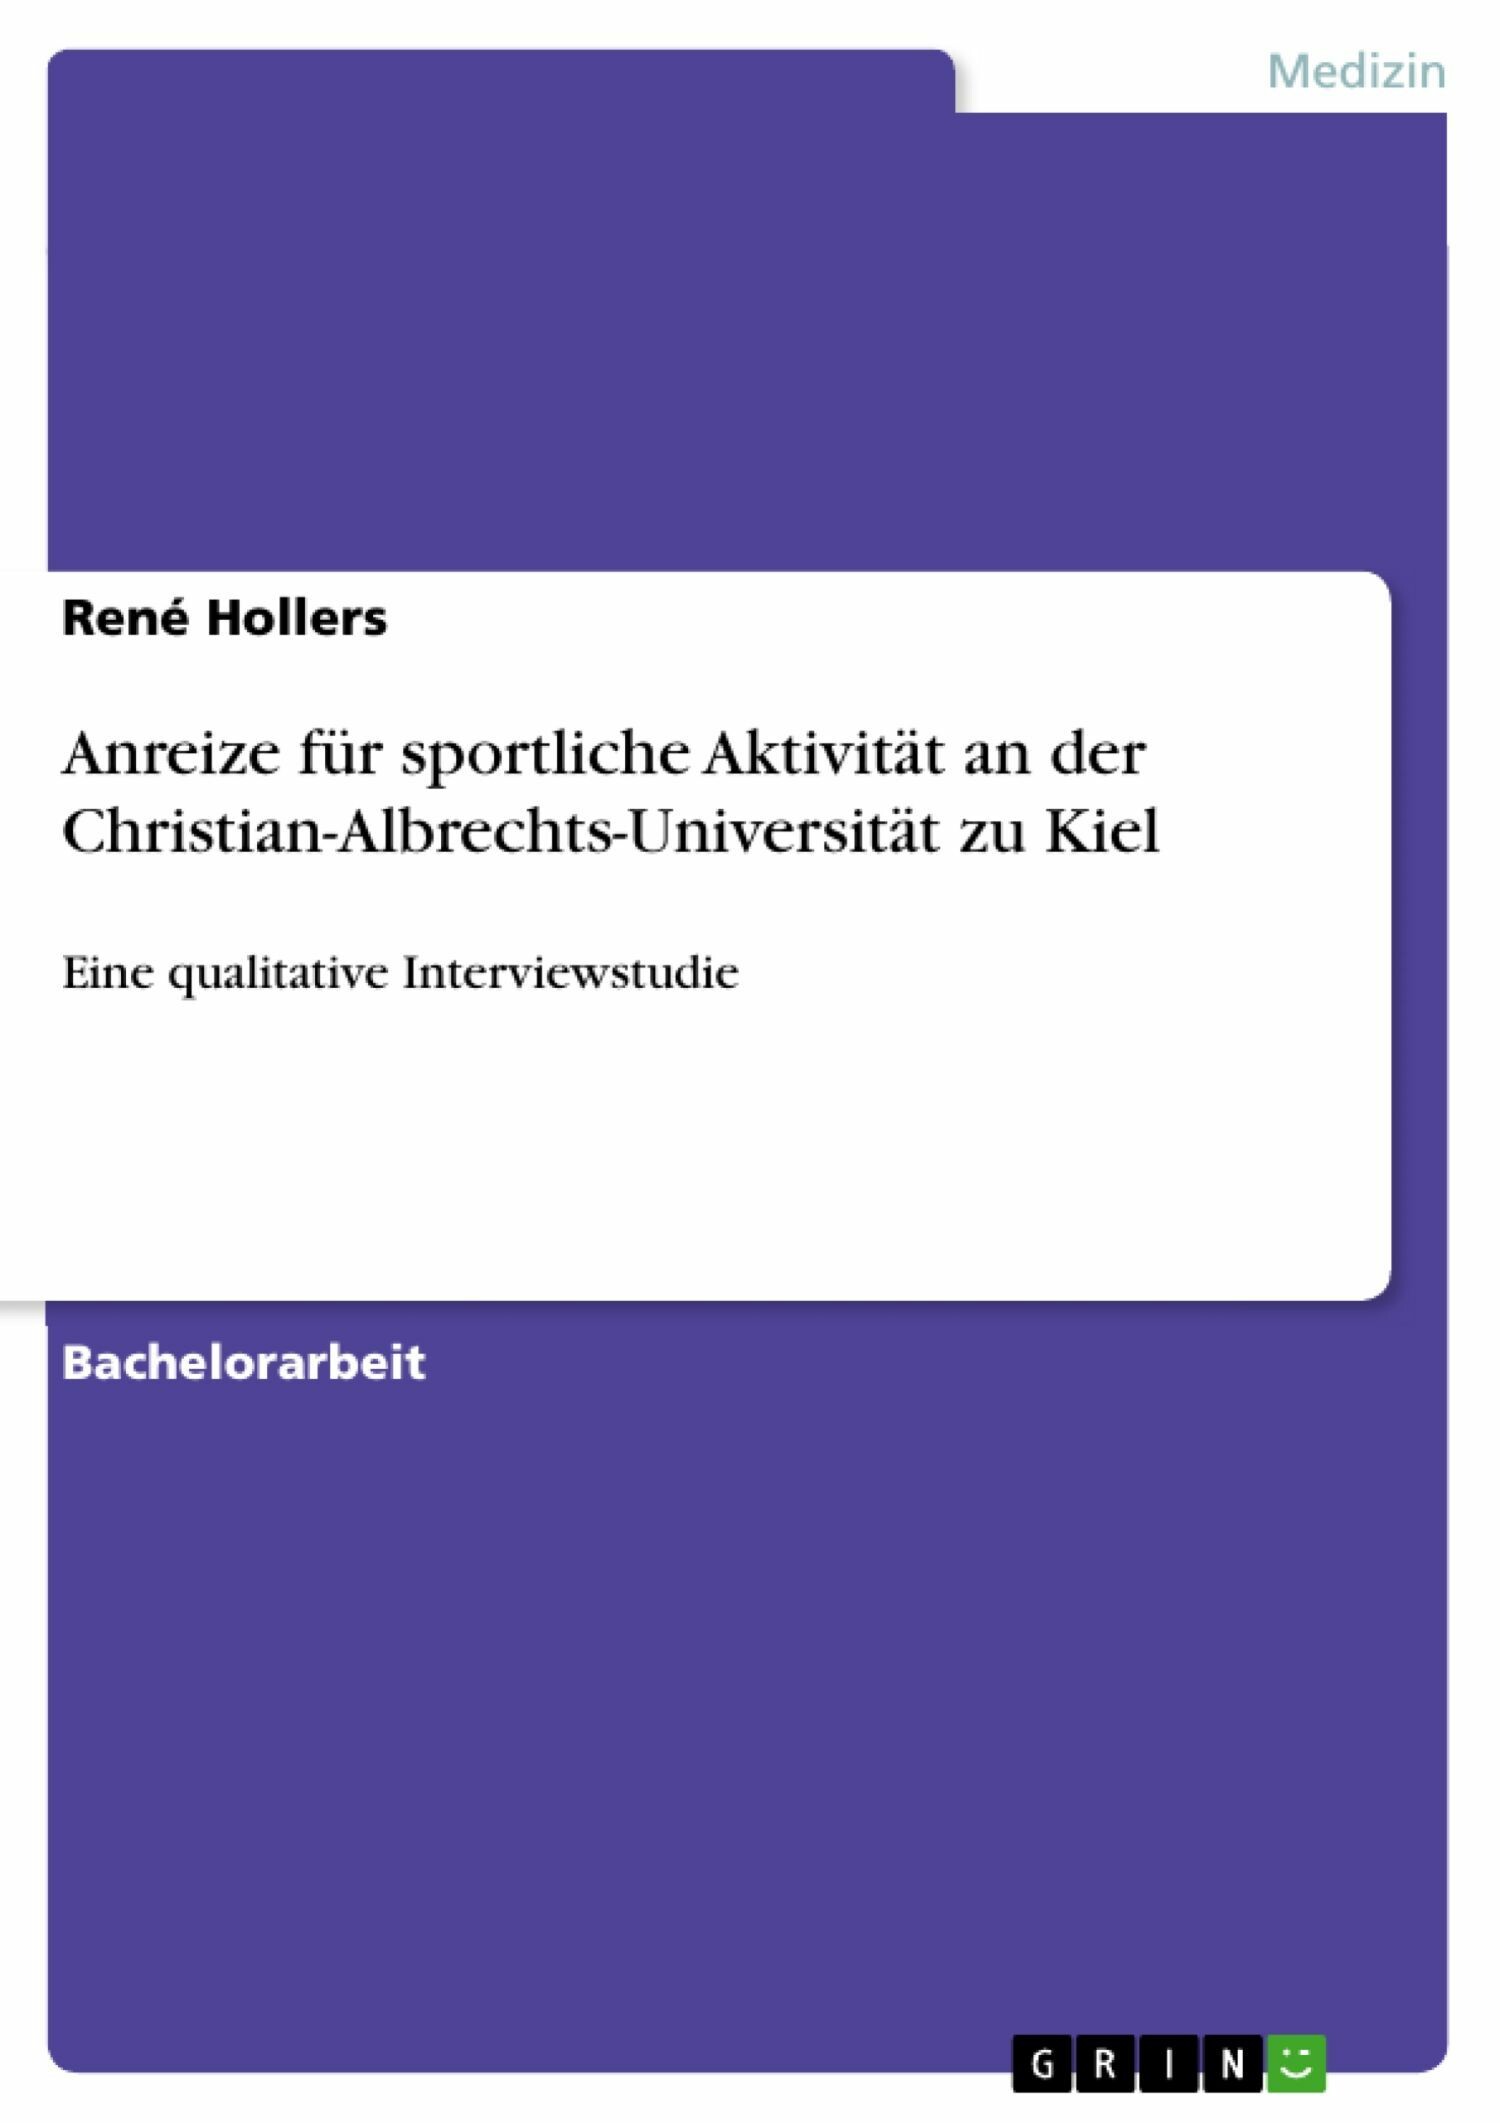 Anreize für sportliche Aktivität an der Christian-Albrechts-Universität zu Kiel